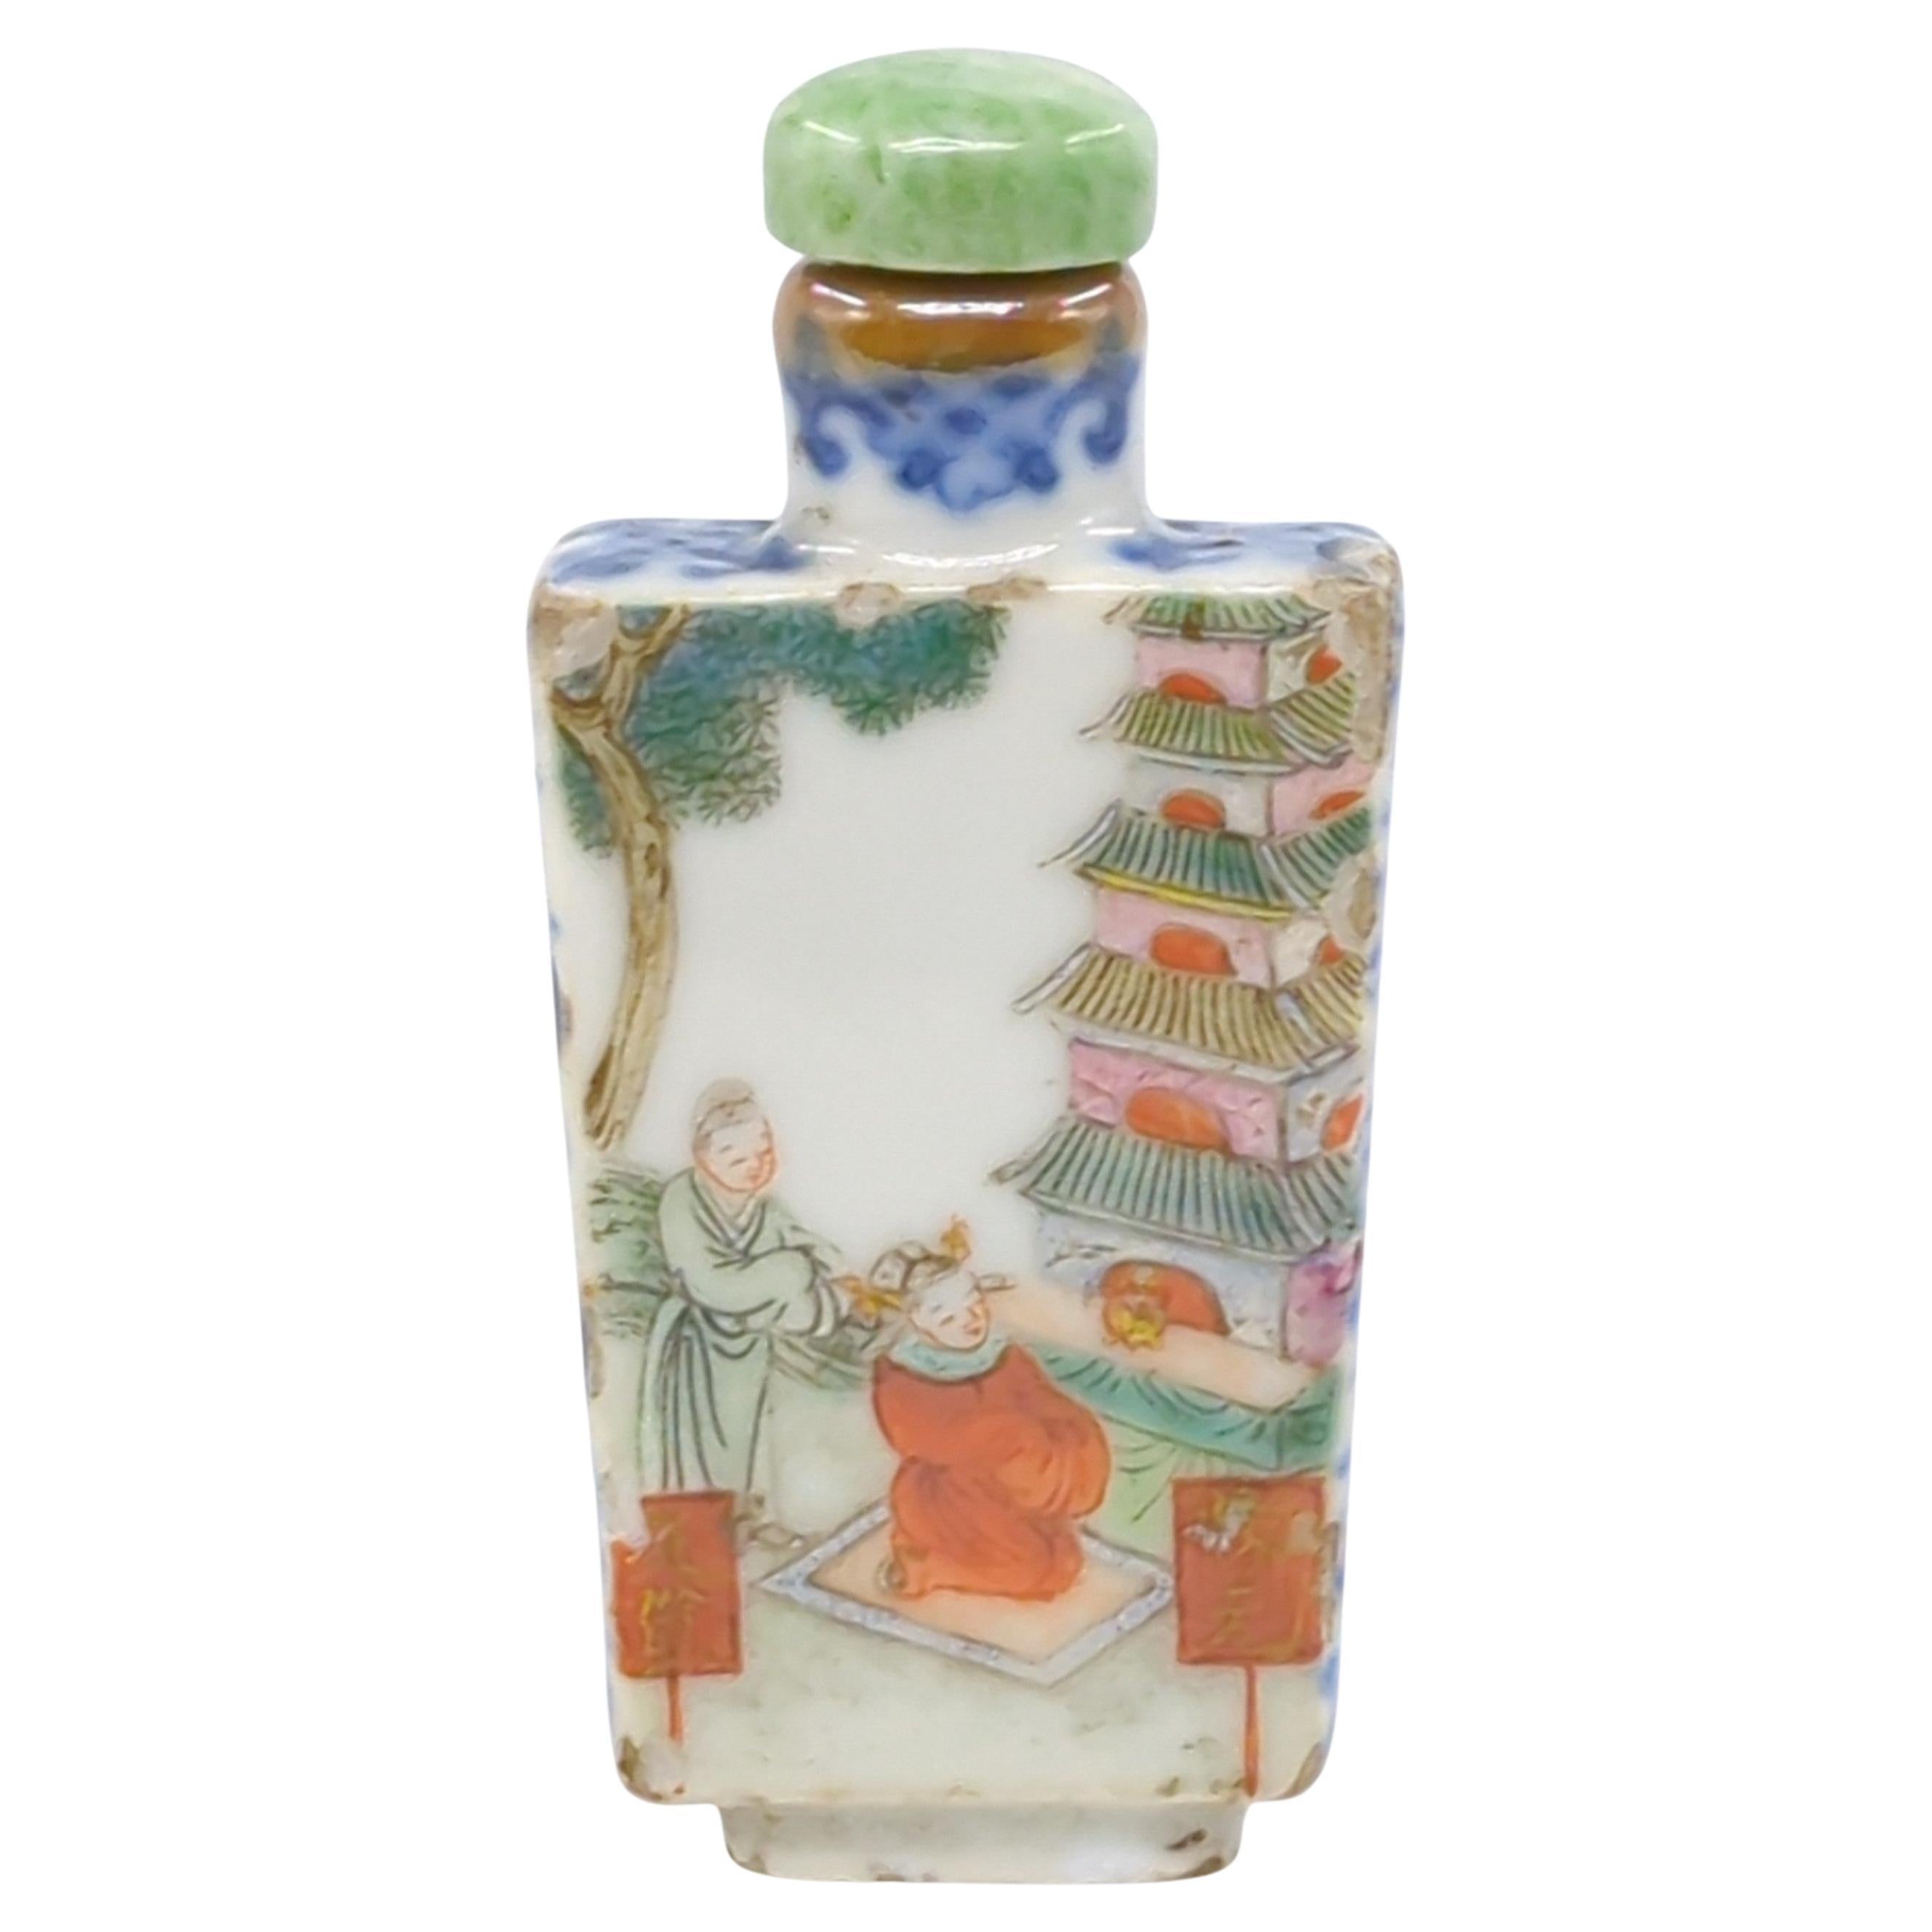 Diese feine chinesische Porzellan-Schnupftabakflasche aus der Jiaqing-Periode der Qing-Dynastie  hat eine sich verjüngende, rechteckige Form, die Eleganz mit Robustheit verbindet.

Die Oberseite und die Seiten der Flasche sind mit unterglasurblauen